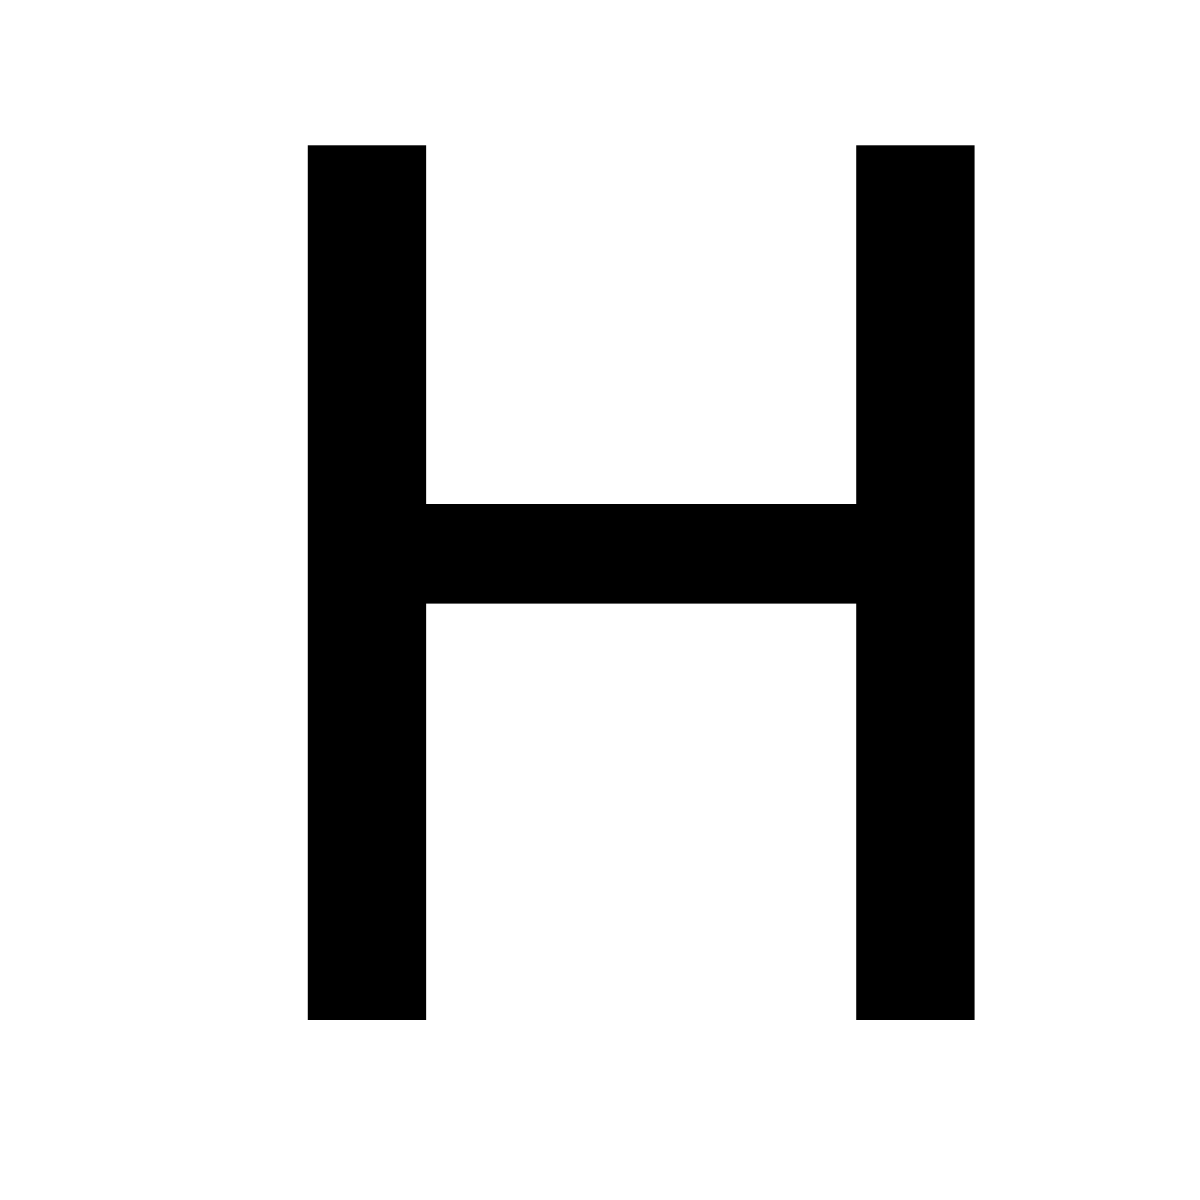 Black and white alphabet letter h logo icon design